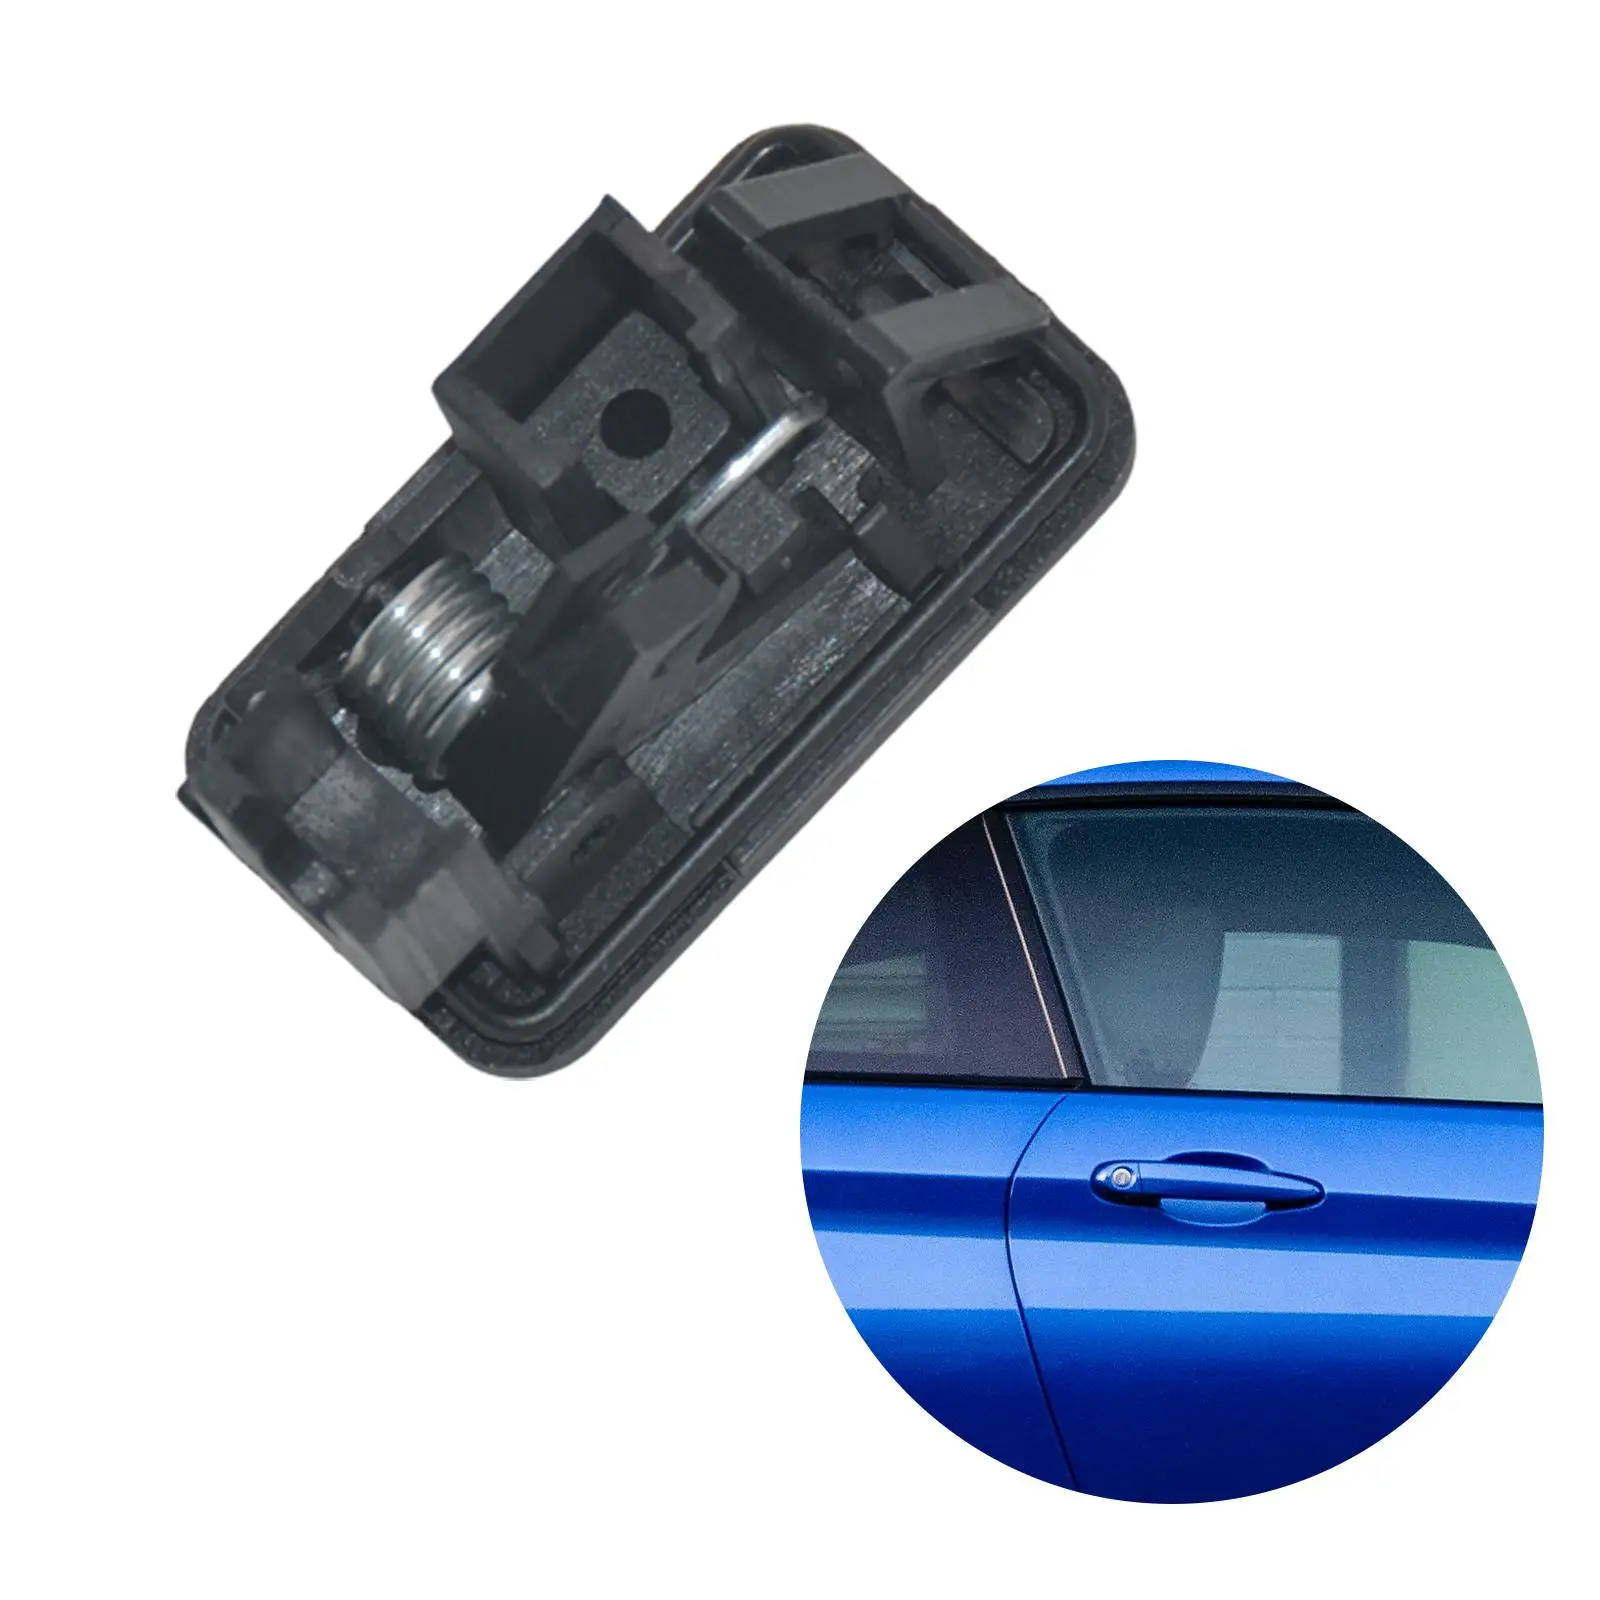 76520-77J00 Car Auto Parts Accessories Replaces Premium Durable Fuel Door Lock Release Actuator for Suzuki Swift SX4 Vitara